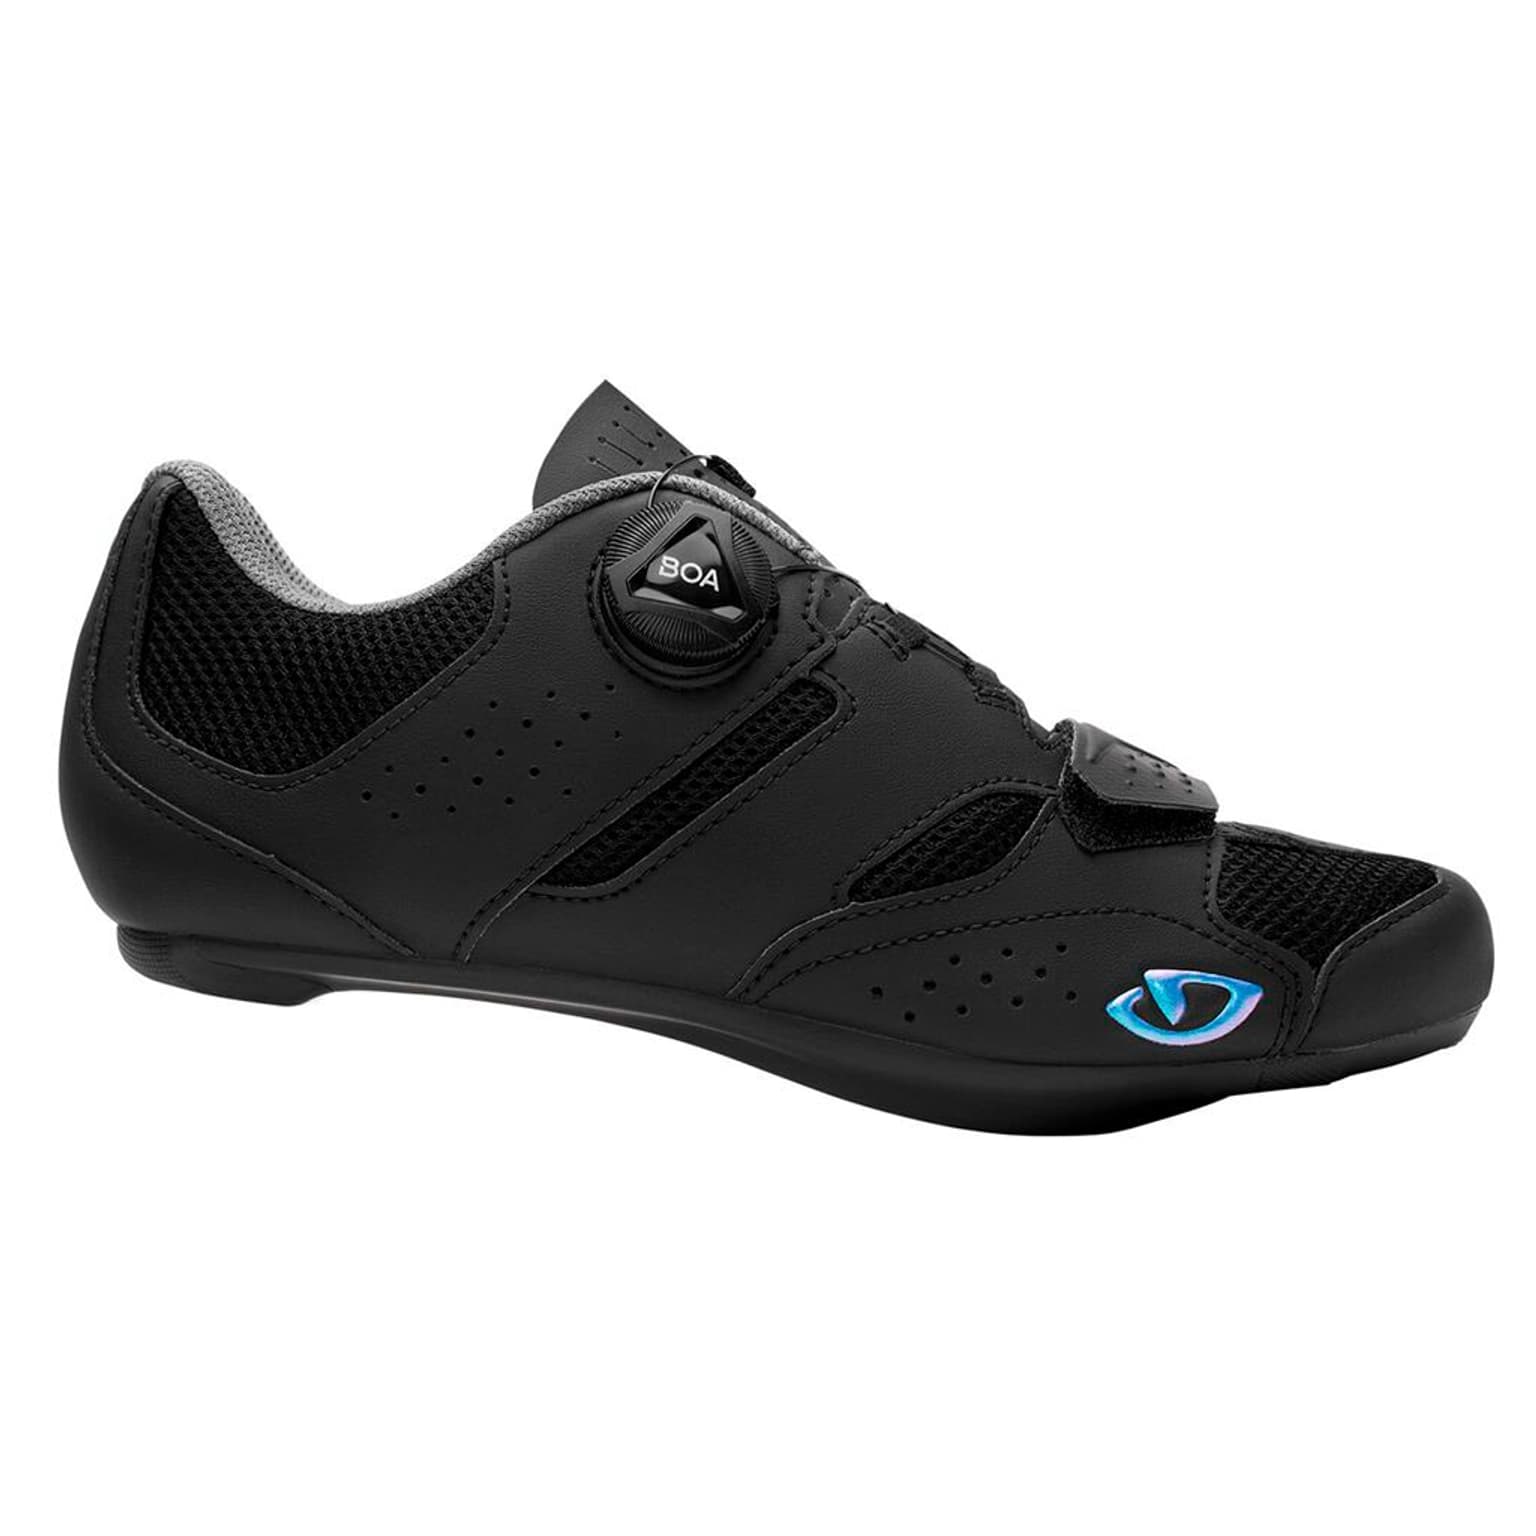 Giro Giro Savix W II Shoe Chaussures de cyclisme noir 1